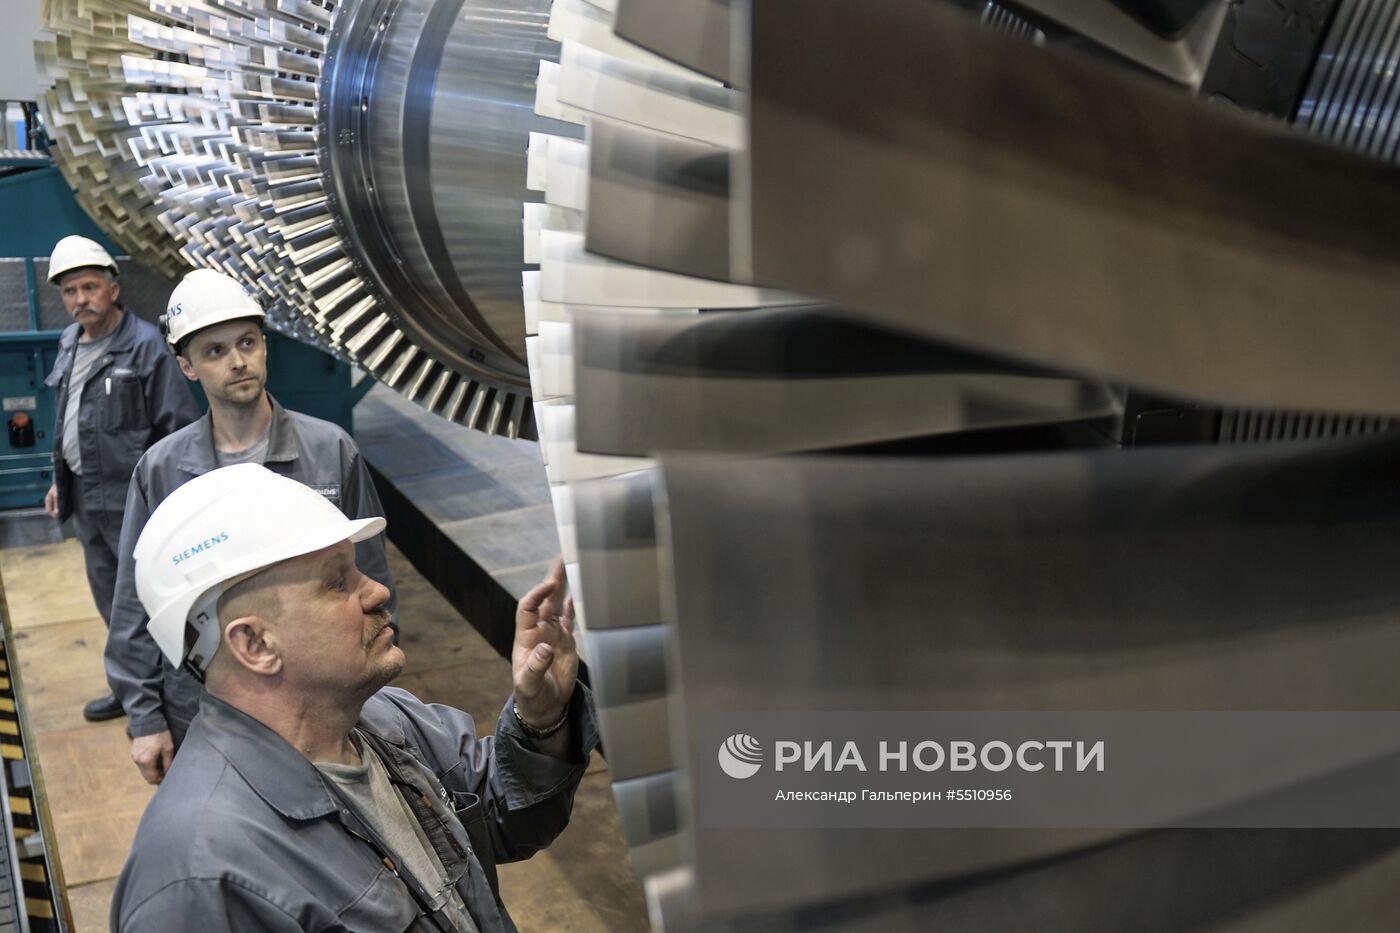 Открытие нового цеха на заводе компании «Сименс» в Санкт-Петербурге